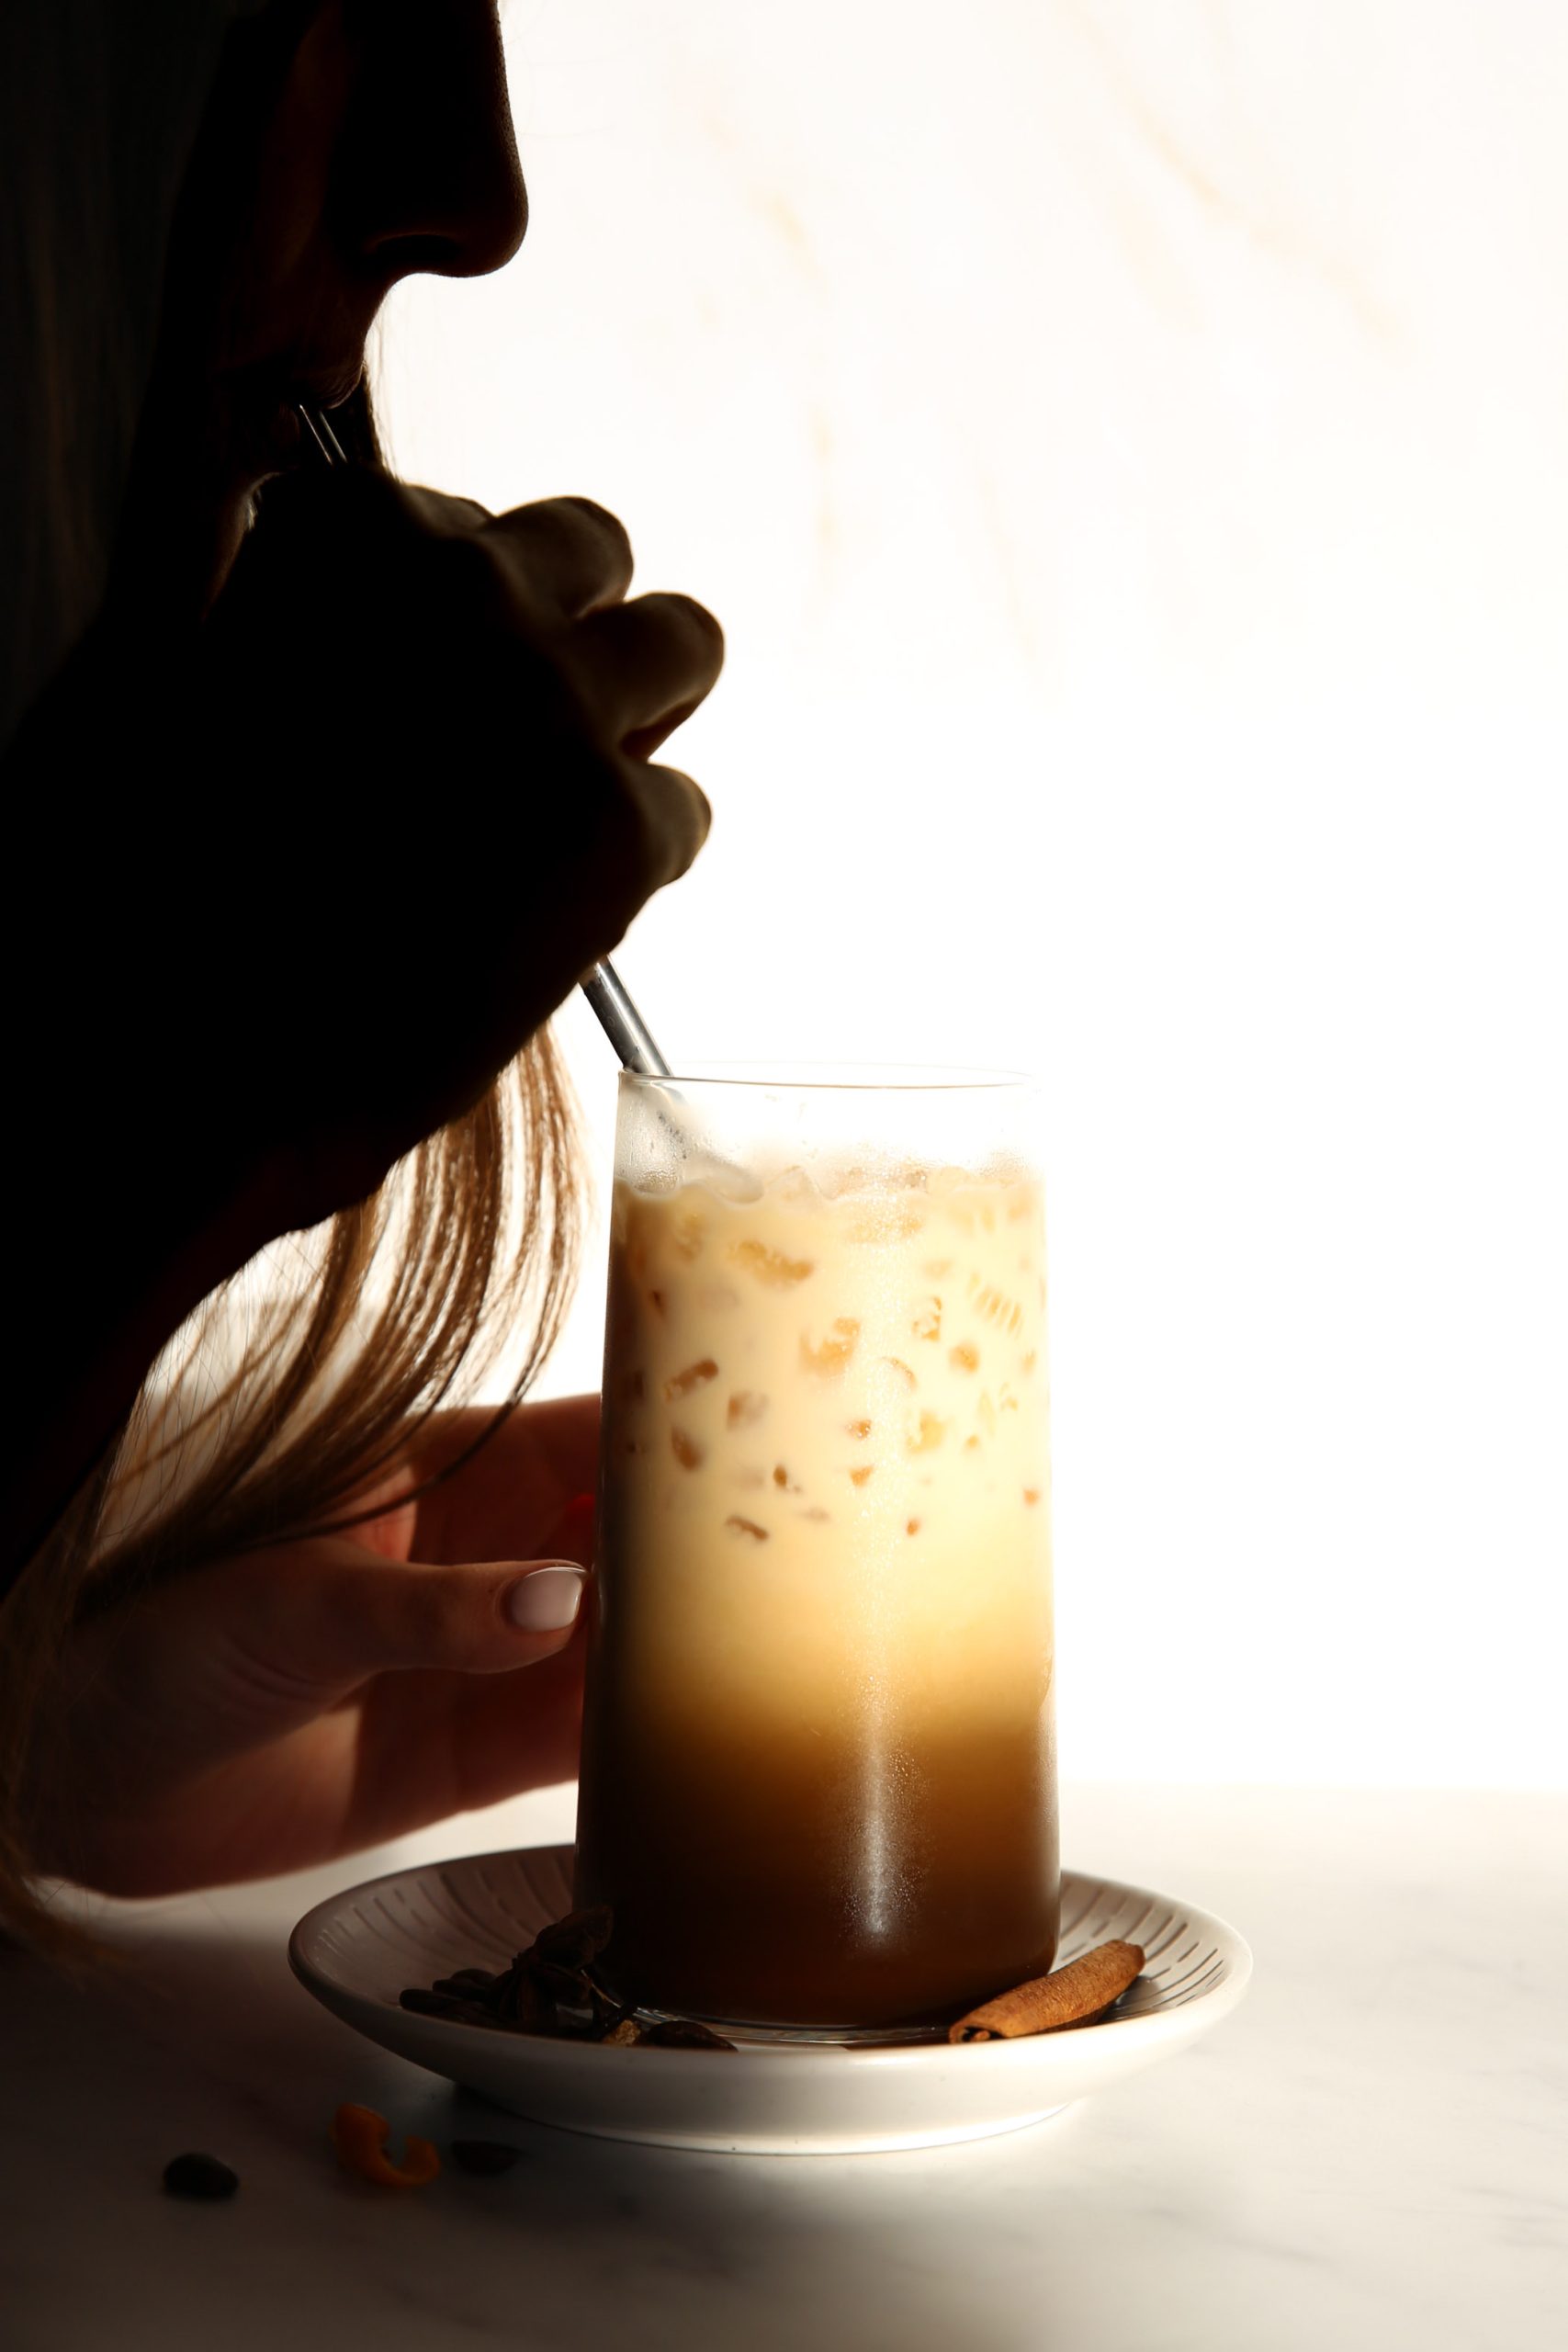 A woman enjoying an iced latte from a glass.